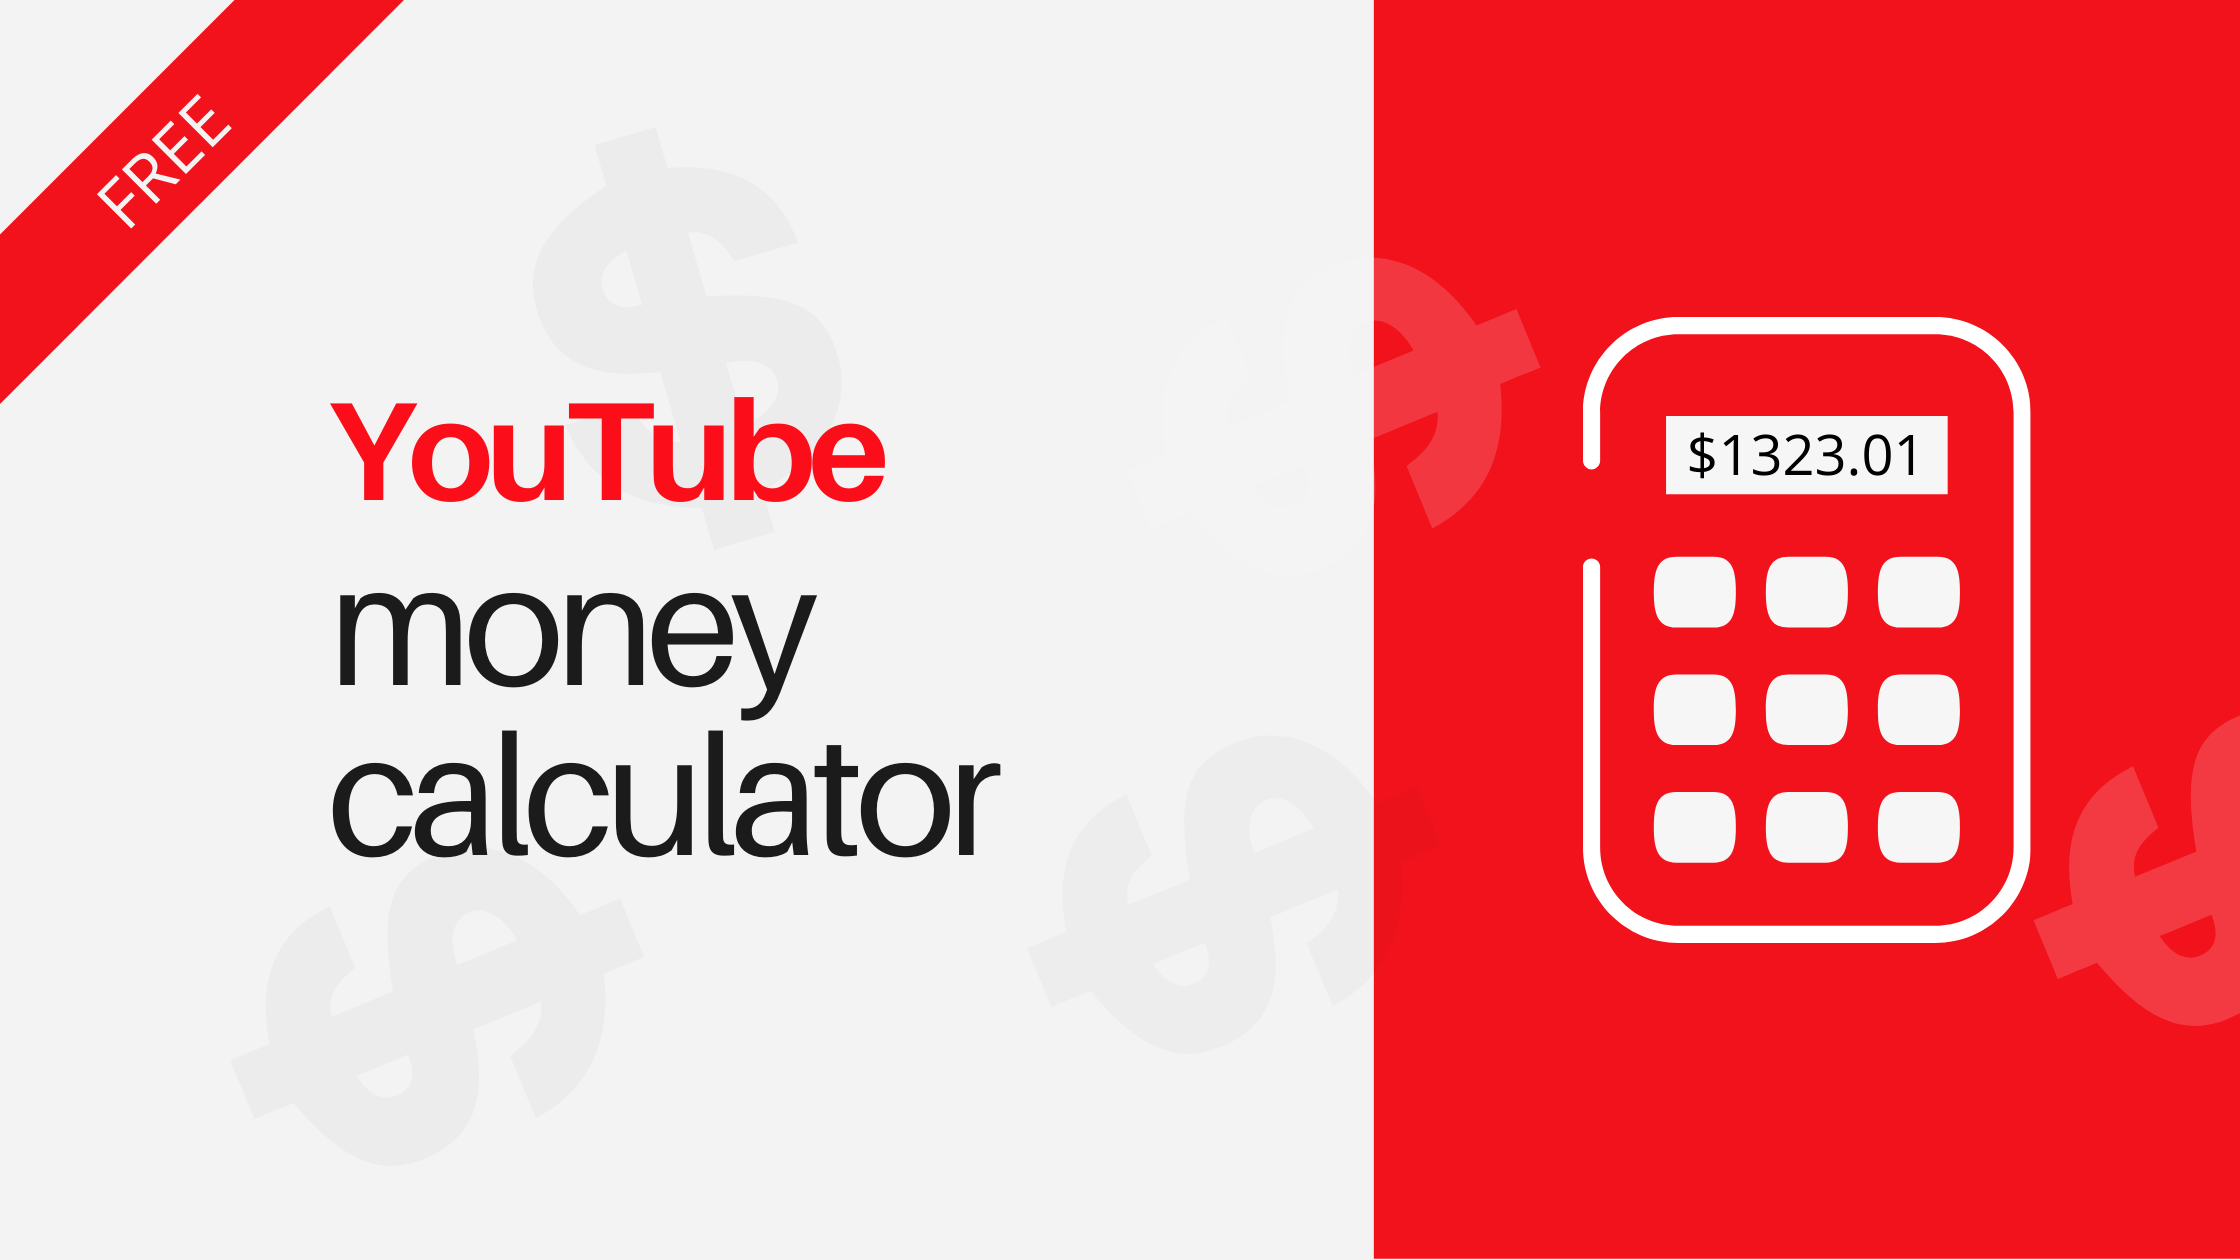 Clásico espejo Mirar fijamente No 1) YouTube Money Calculator Free: Easy To Use!